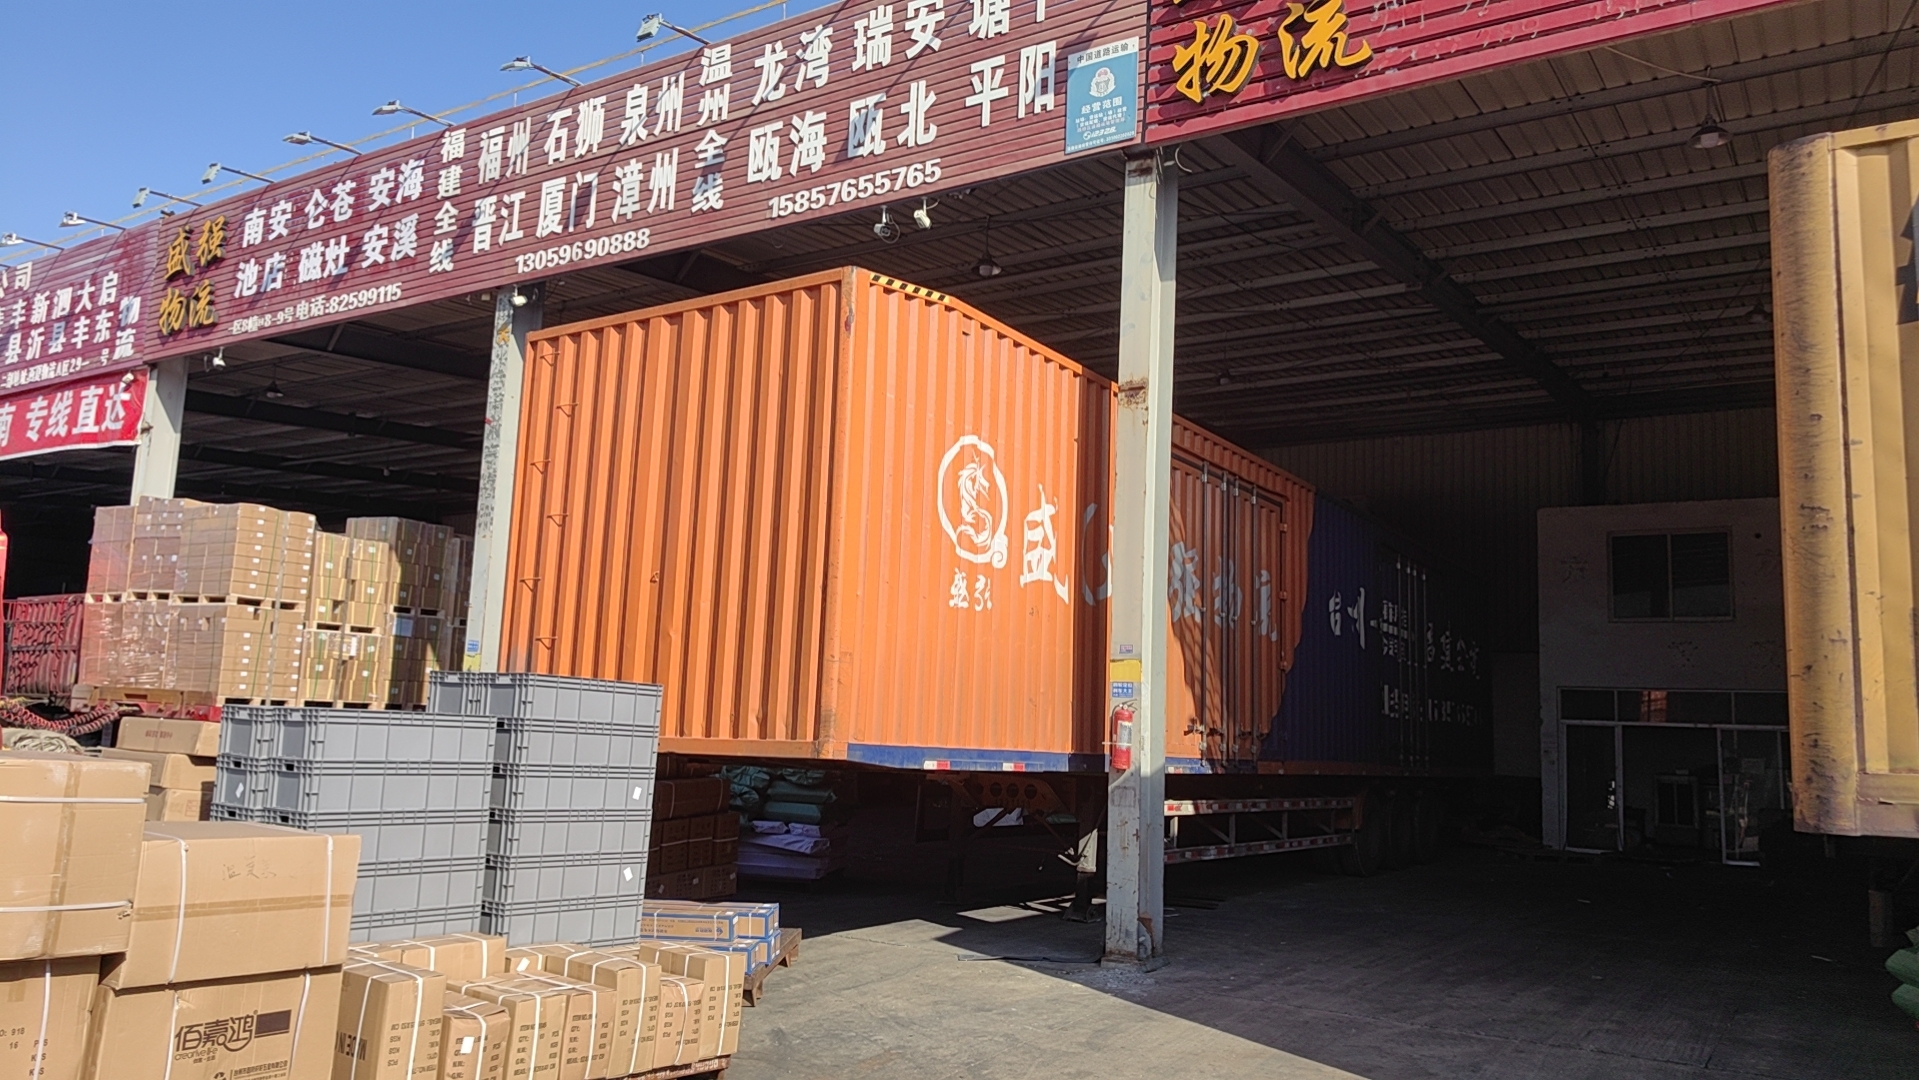 台州至梅州快运专线 整车运输  零担物流  甩挂运输 货物运输全国    台州到梅州直达陆运